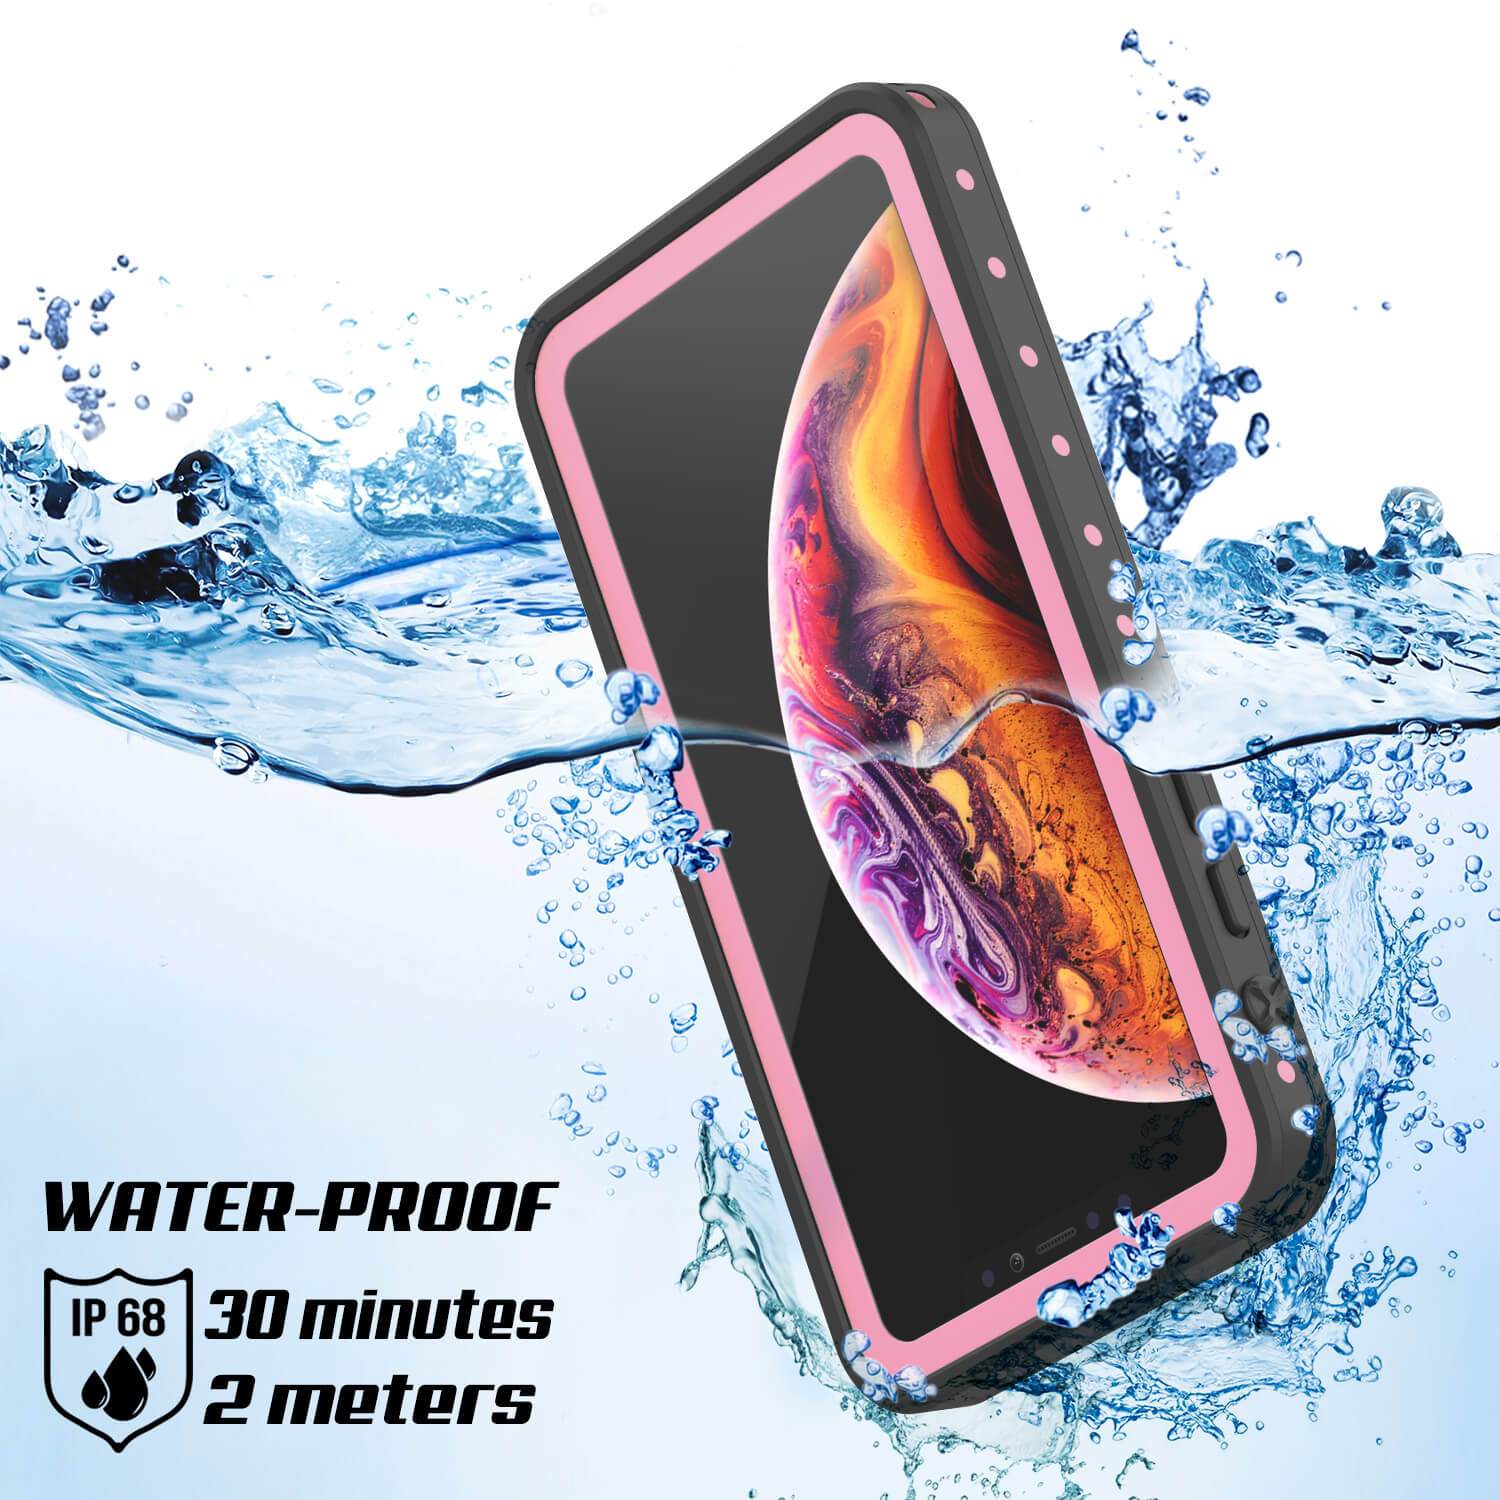 iPhone XS Waterproof IP68 Case, Punkcase [Pink] [StudStar Series] [Slim Fit] [Dirtproof]